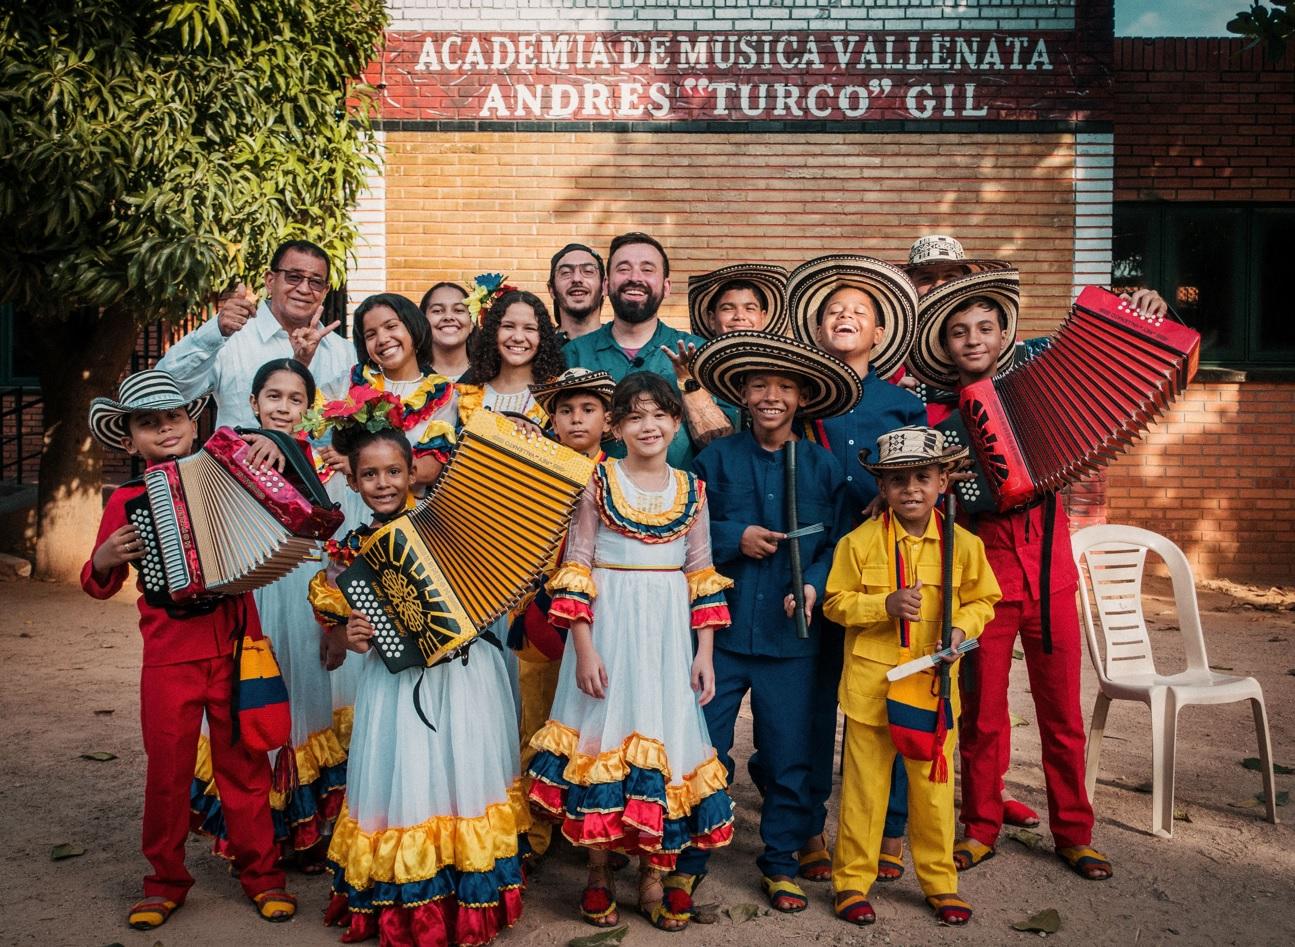 oase alaturi de copii de la academia de musica vallenata, imbracati colorat